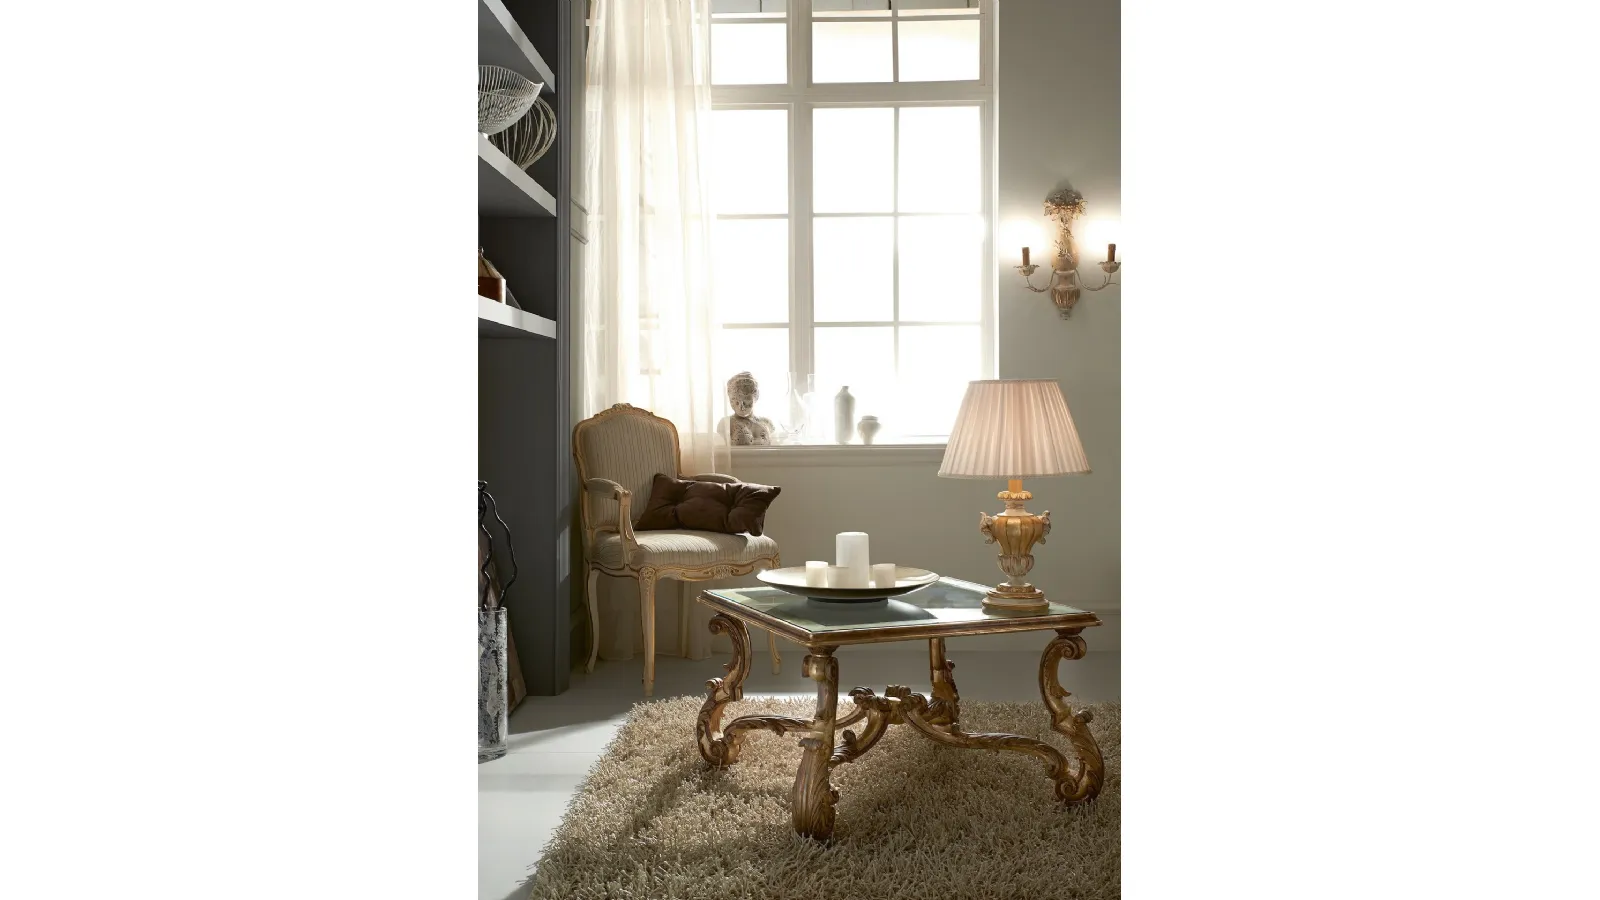 Tavolino quadrato 3439 in stile barocco con top in vetro di Silvano Grifoni